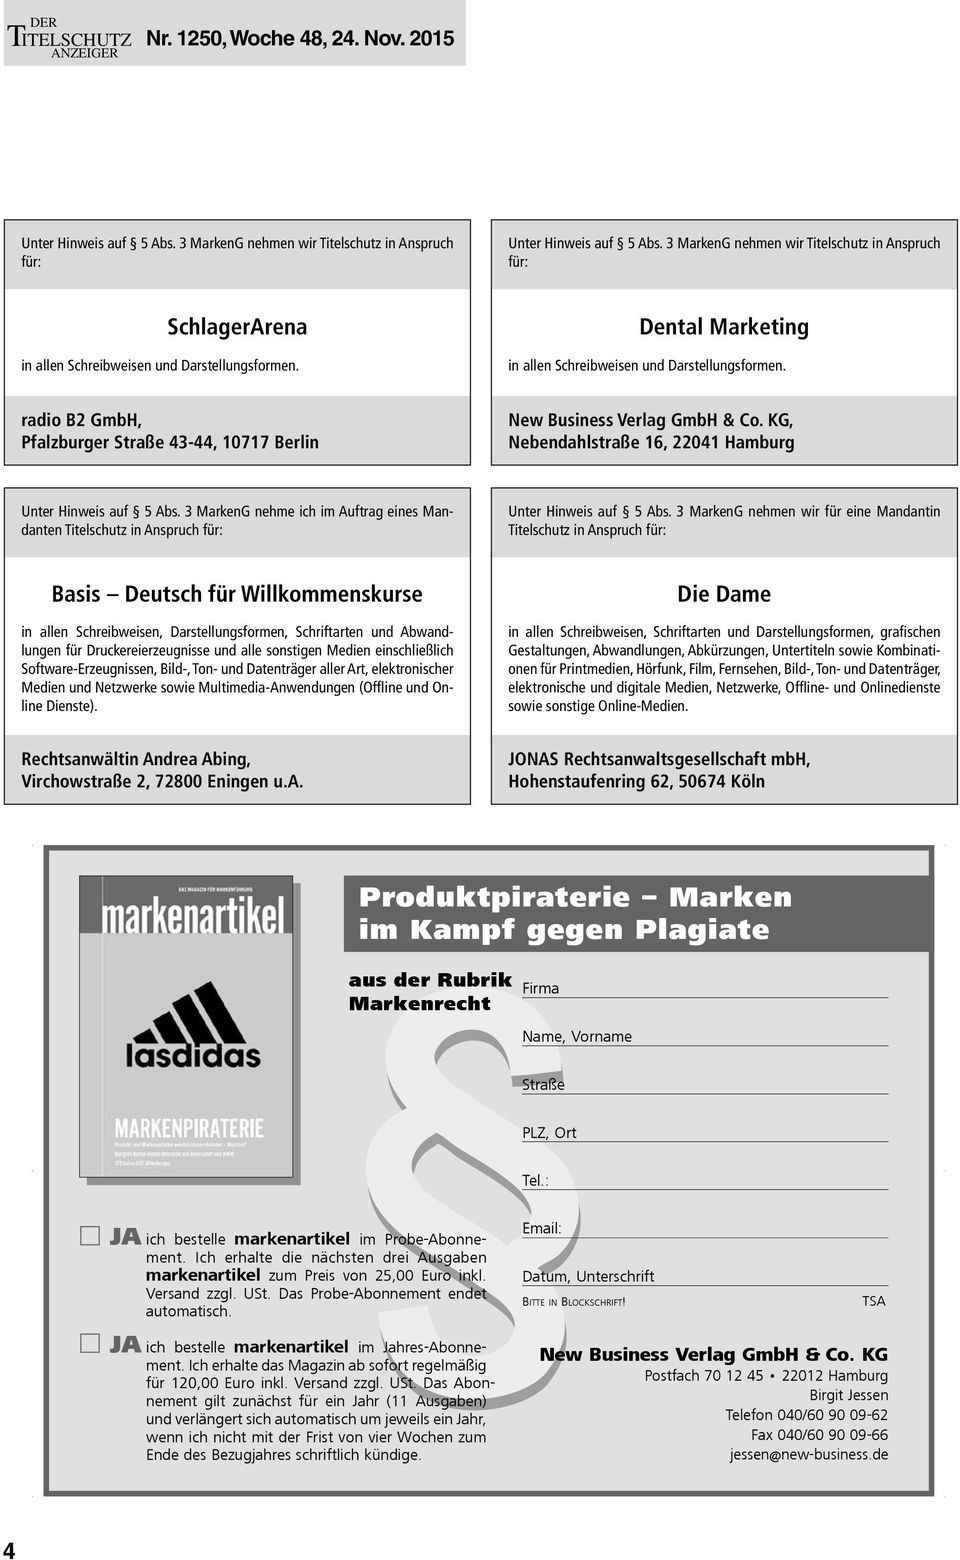 3 MarkenG nehmen wir für eine Mandantin Titelschutz in Anspruch Basis Deutsch für Willkommenskurse in allen Schreibweisen, Darstellungsformen, Schriftarten und Abwandlungen für Druckereierzeugnisse